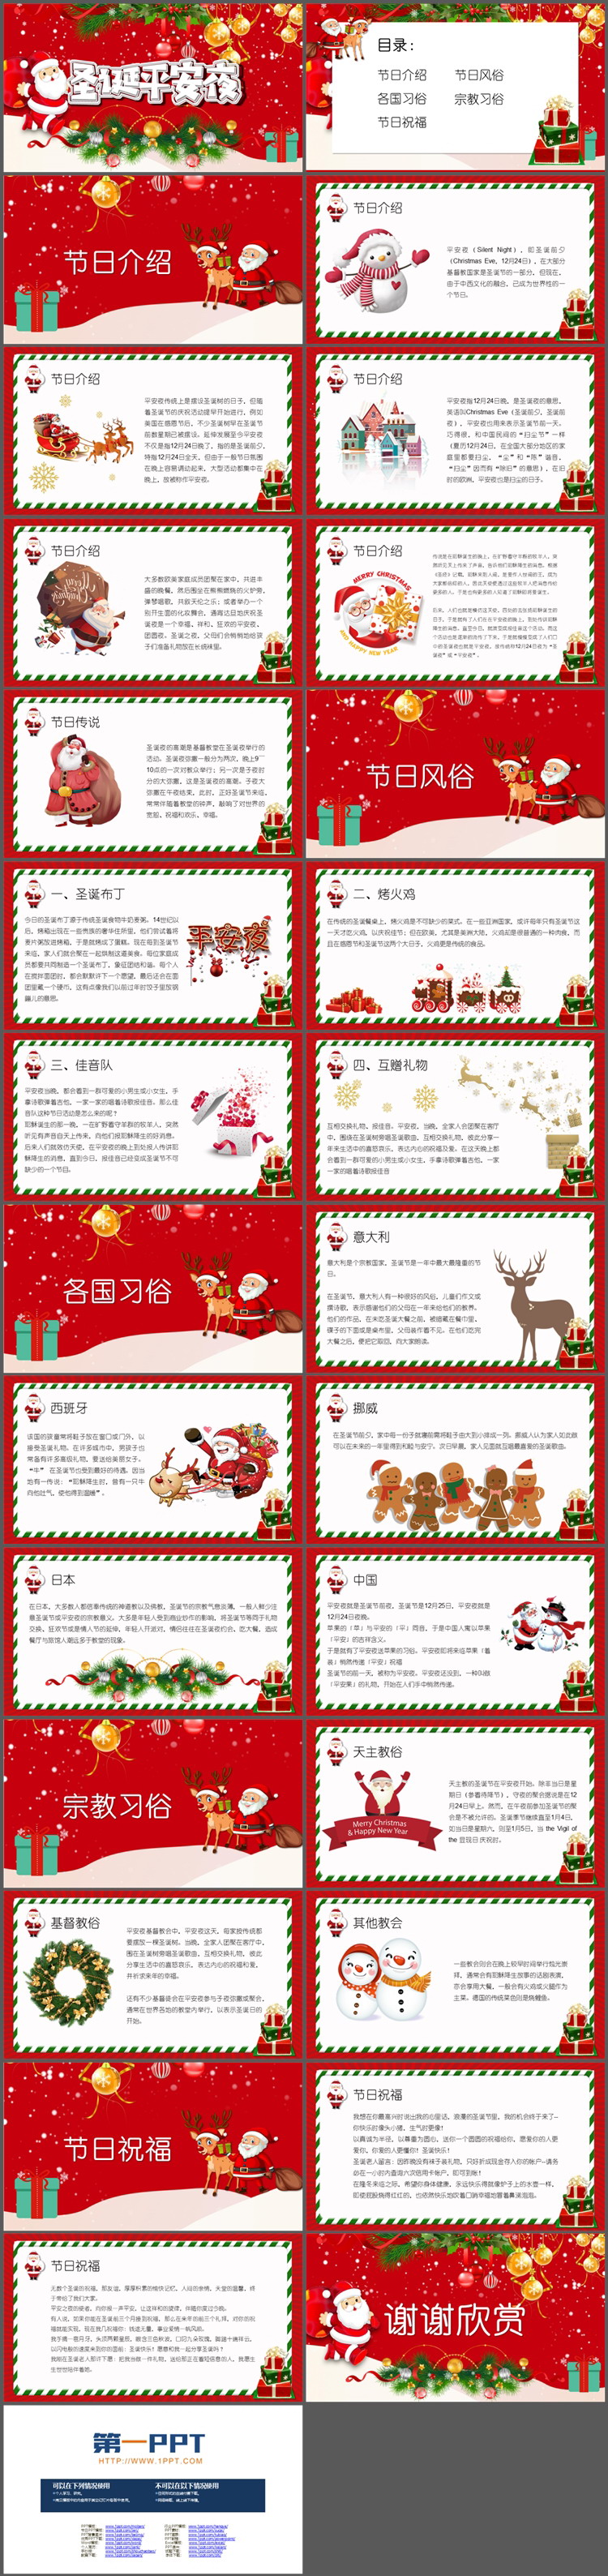 红色喜庆圣诞老人背景的圣诞平安夜PPT模板（2）